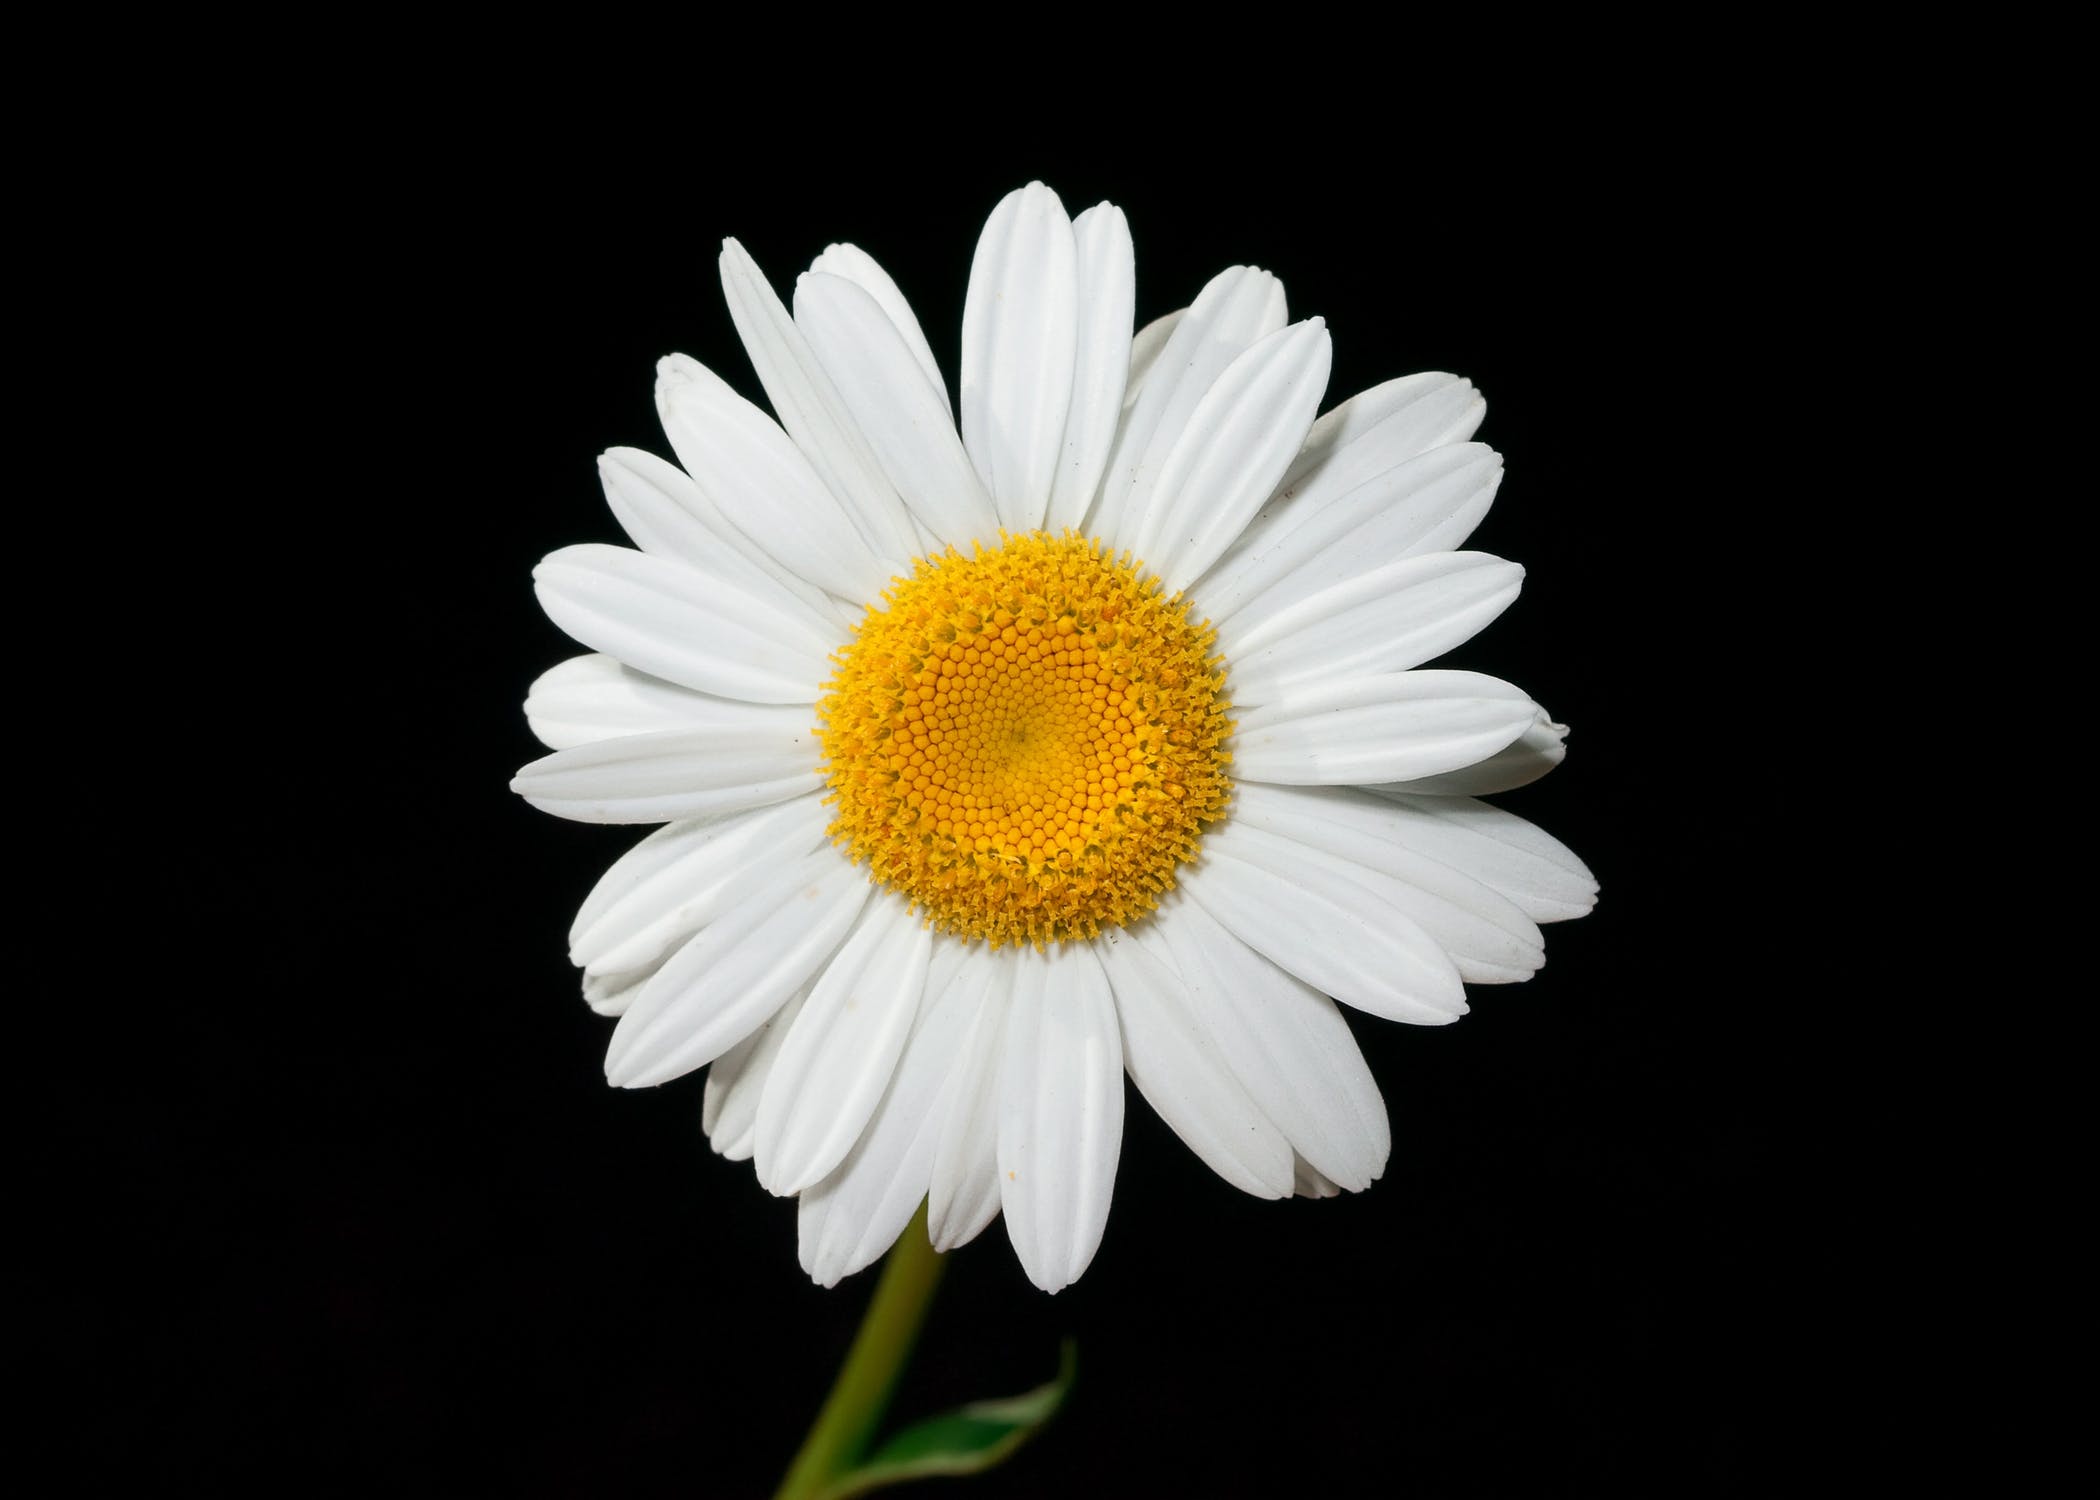 Daisy image